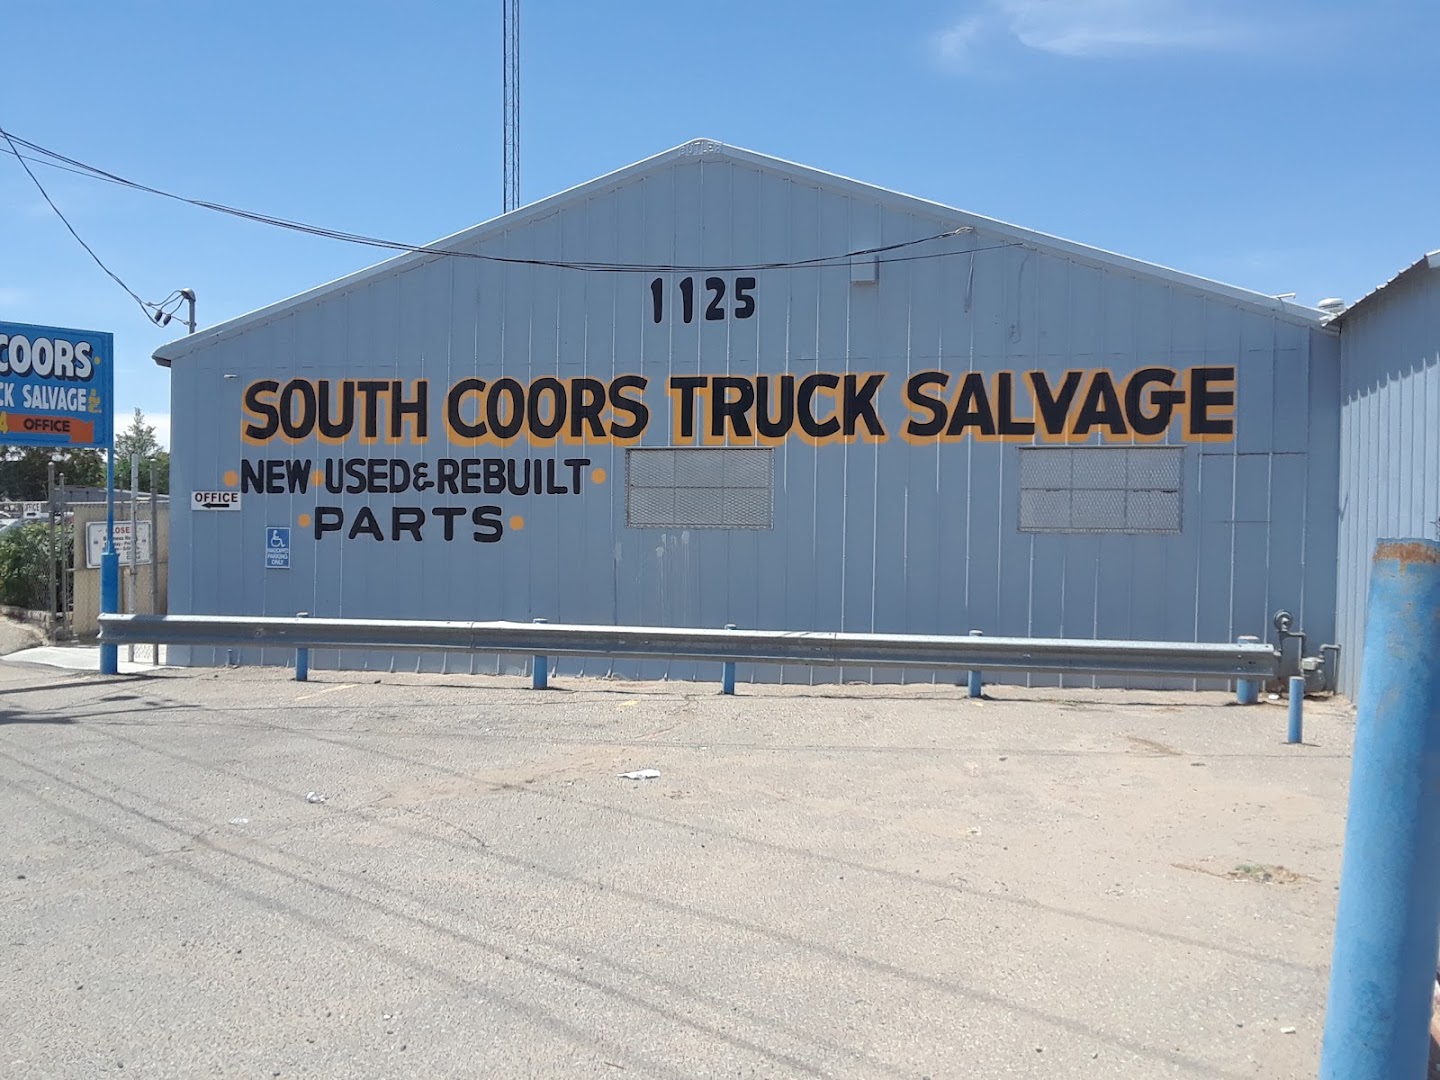 Auto parts store In Albuquerque NM 